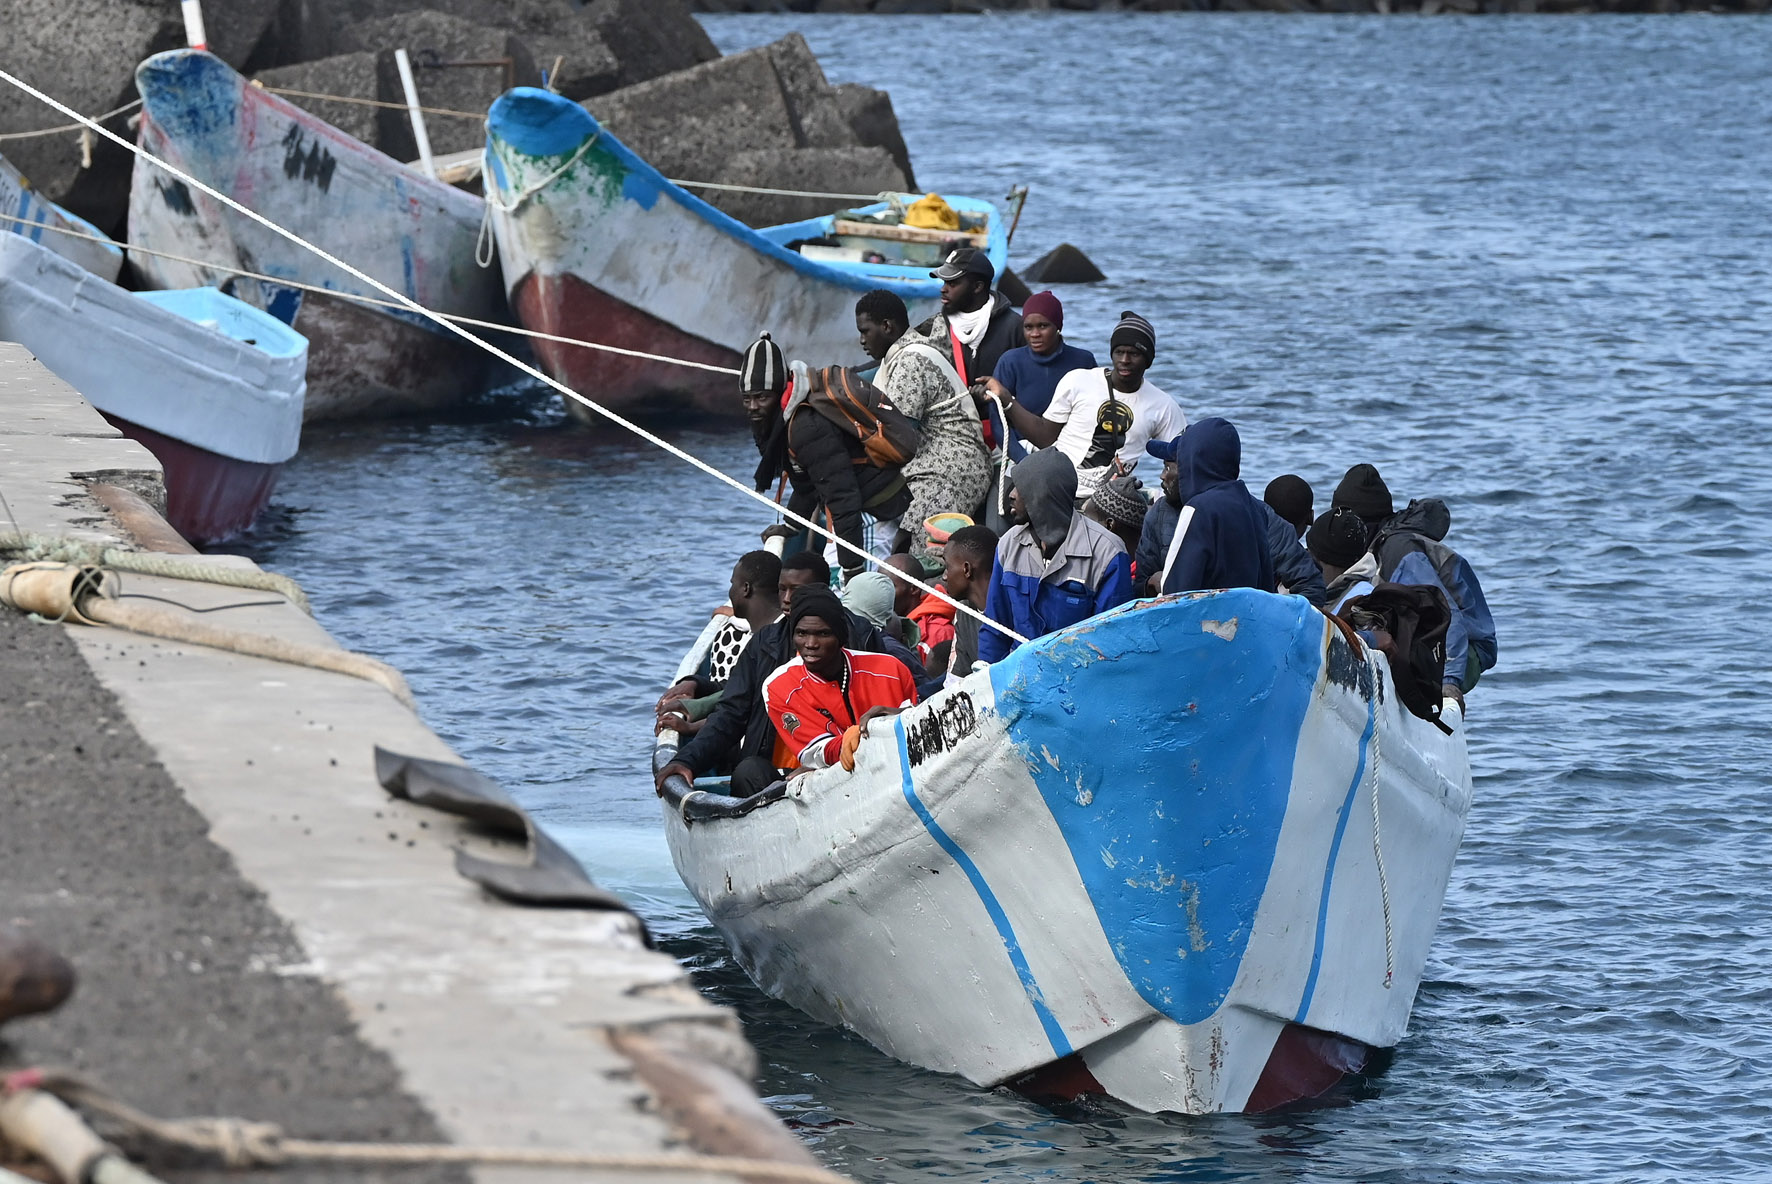 Salvamento Marítimo rescata a más de 300 personas a bordo de 4 cayucos en el día de hoy